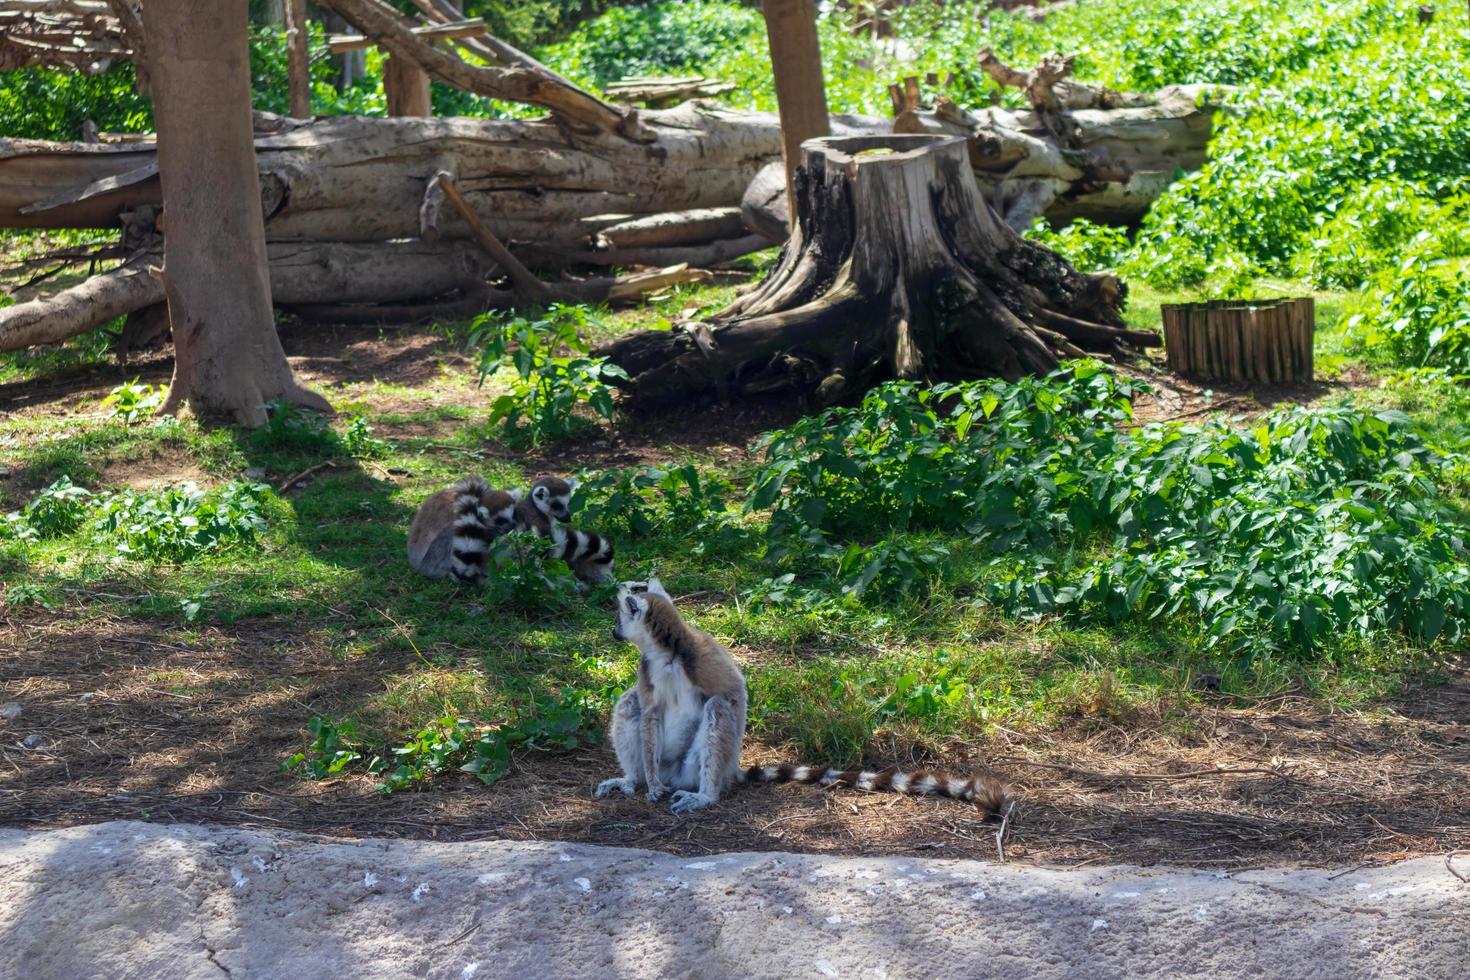 lemur definindo no chão foto